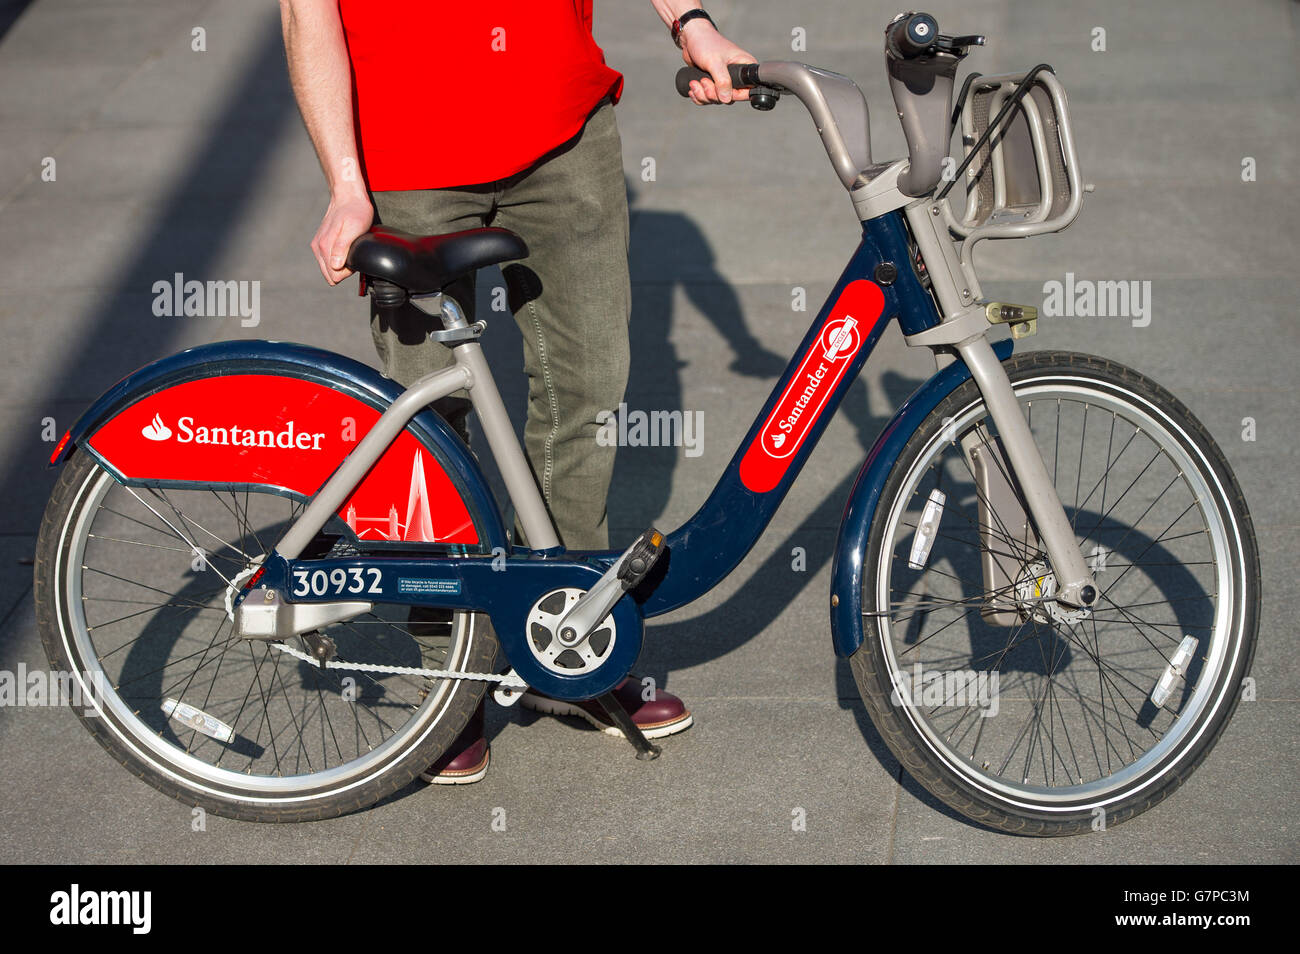 Allgemeine Ansicht eines Fahrradverleihs der Marke Santander bei einer Einführungsveranstaltung im Zentrum von London, bei der Santander als neuer Sponsor des Londoner Fahrradverleihs bekannt gegeben wird. Stockfoto